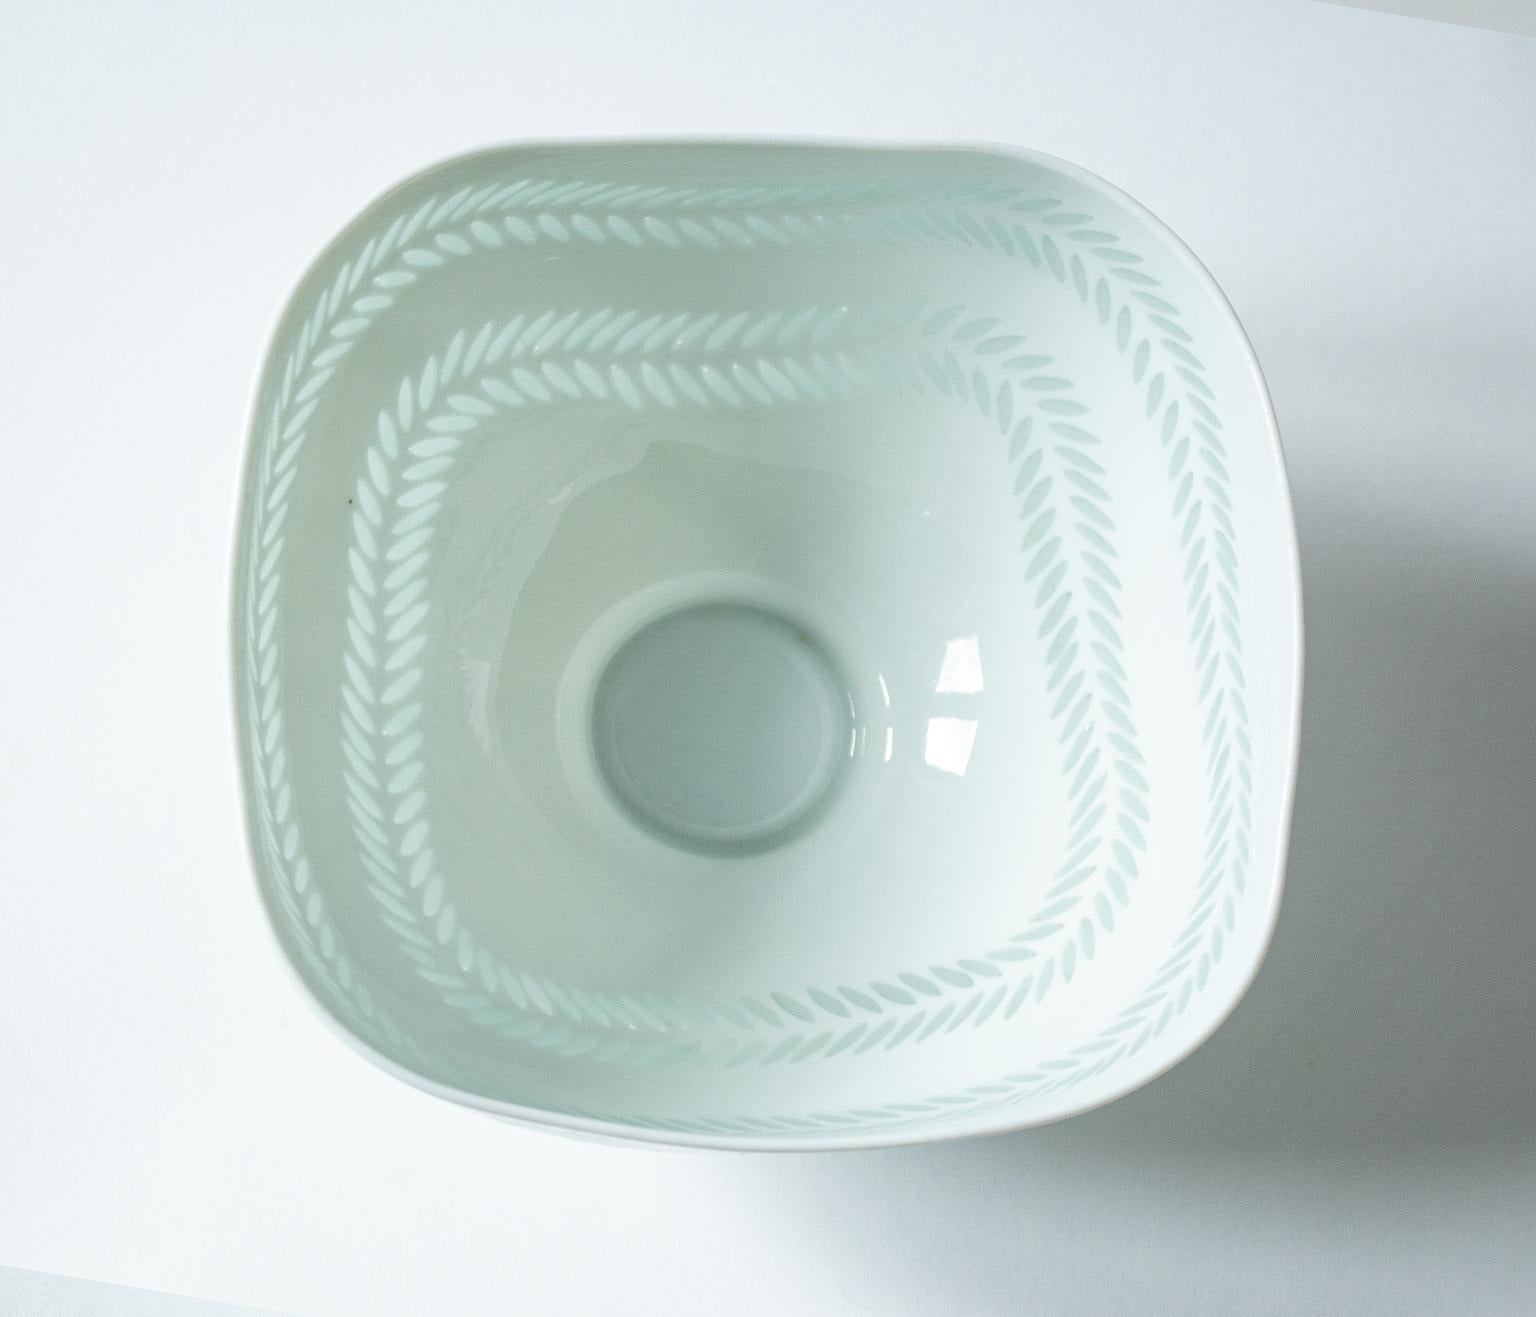 Hand-Crafted Scandinavian Modern Rice Grain Porcelain Bowl by Friedl Holzer-Kjellberg, Arabia